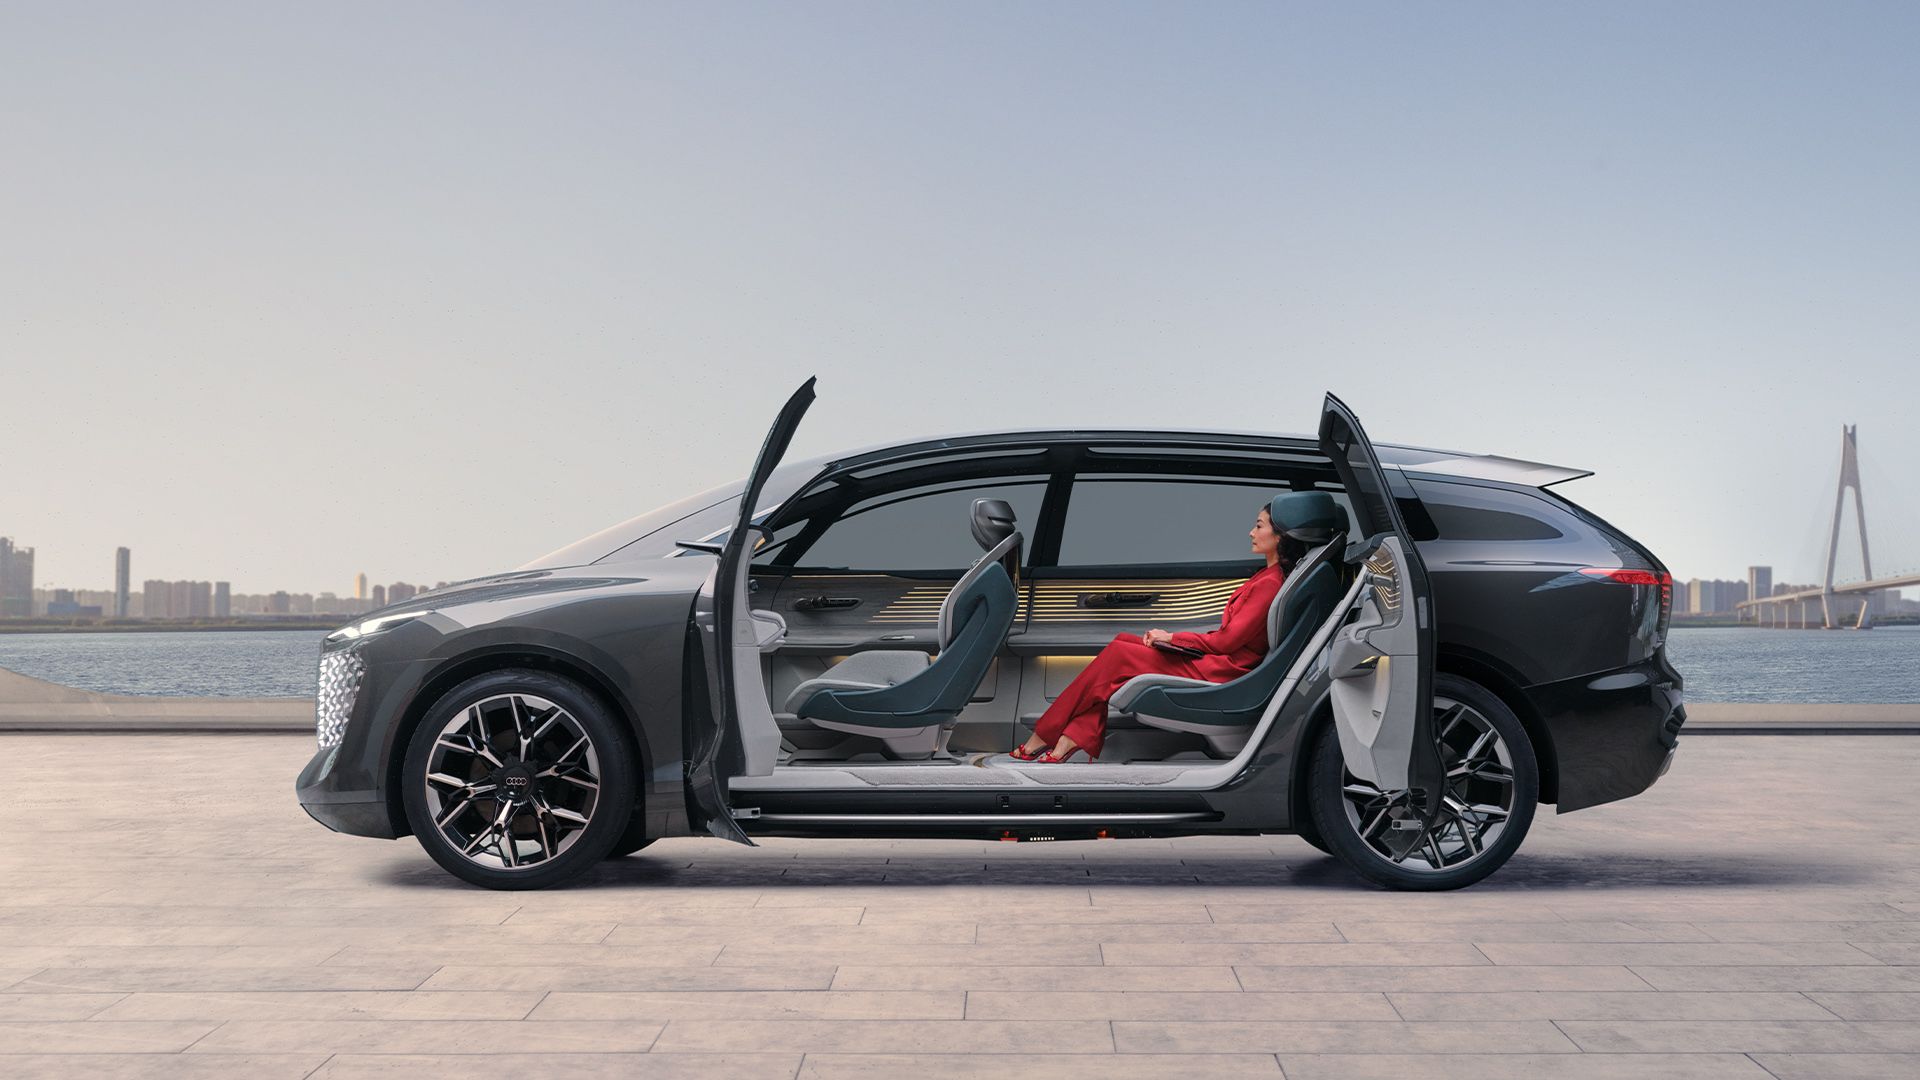 Las puertas abiertas dejan la vista despejada al habitáculo del Audi urbansphere concept.